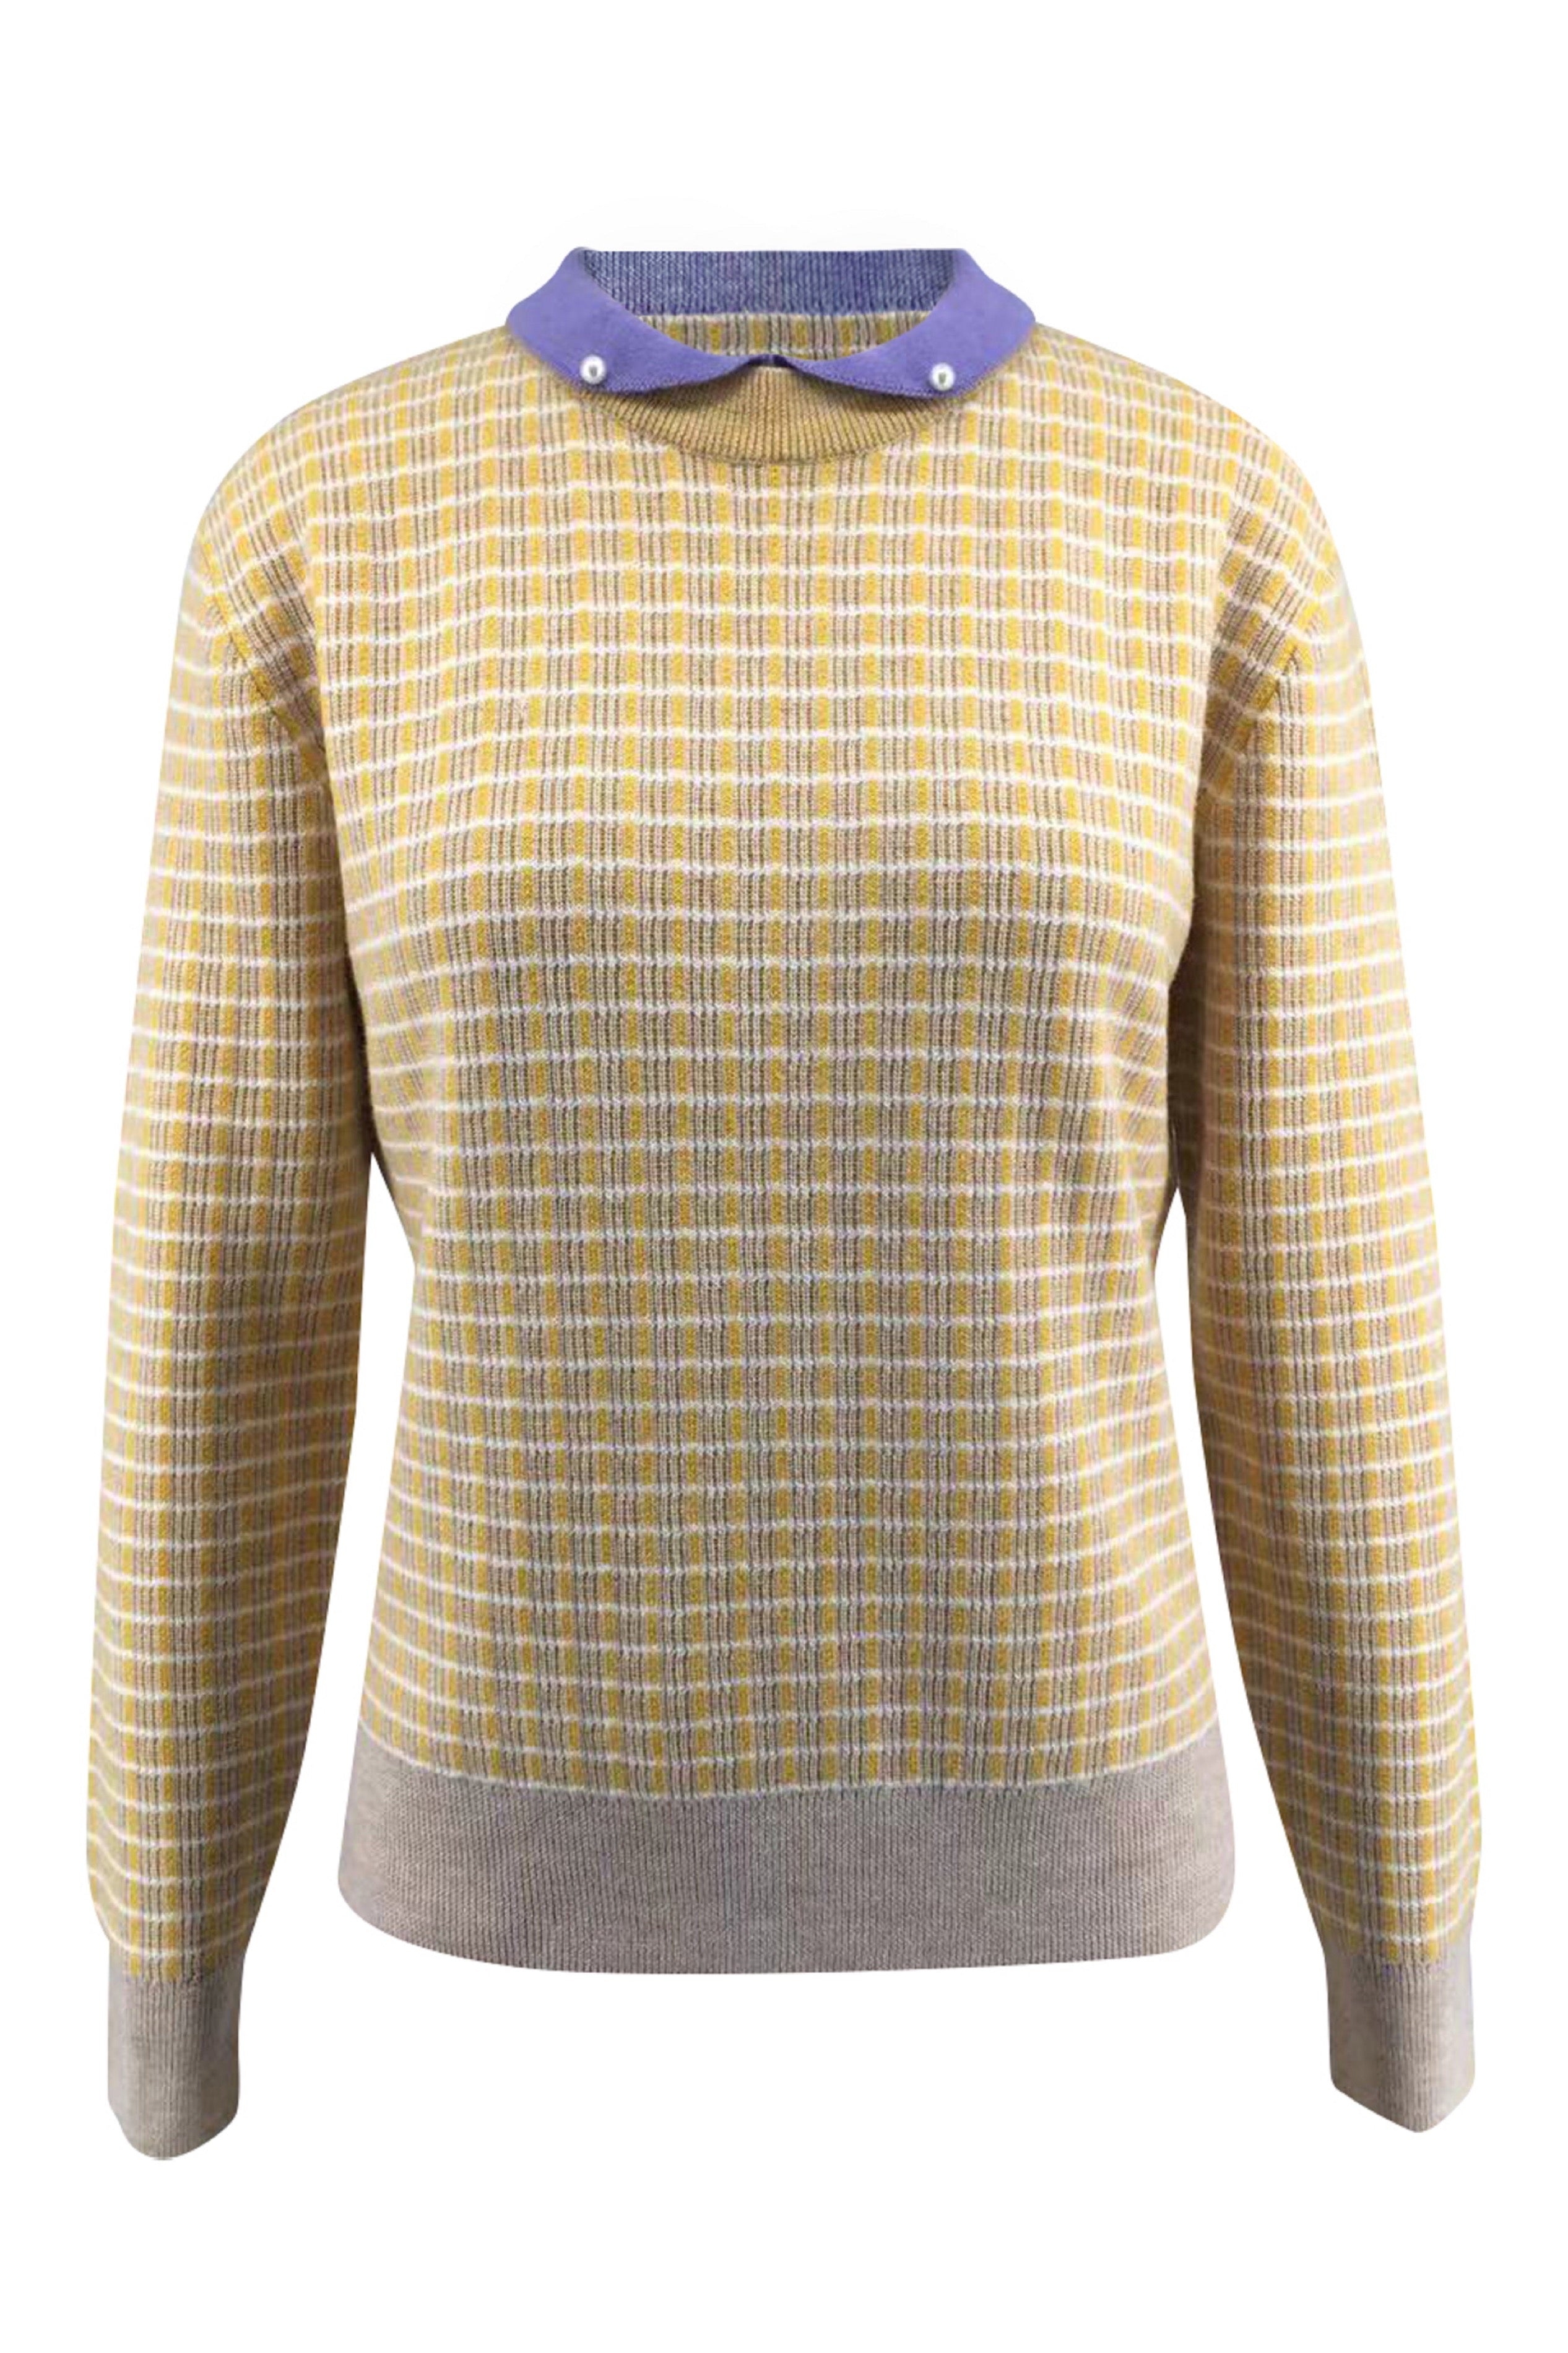 Merino Wool | Women Merino Sweater | Pullover Sweater | Winter Pullover Sweater| Bellemere New York